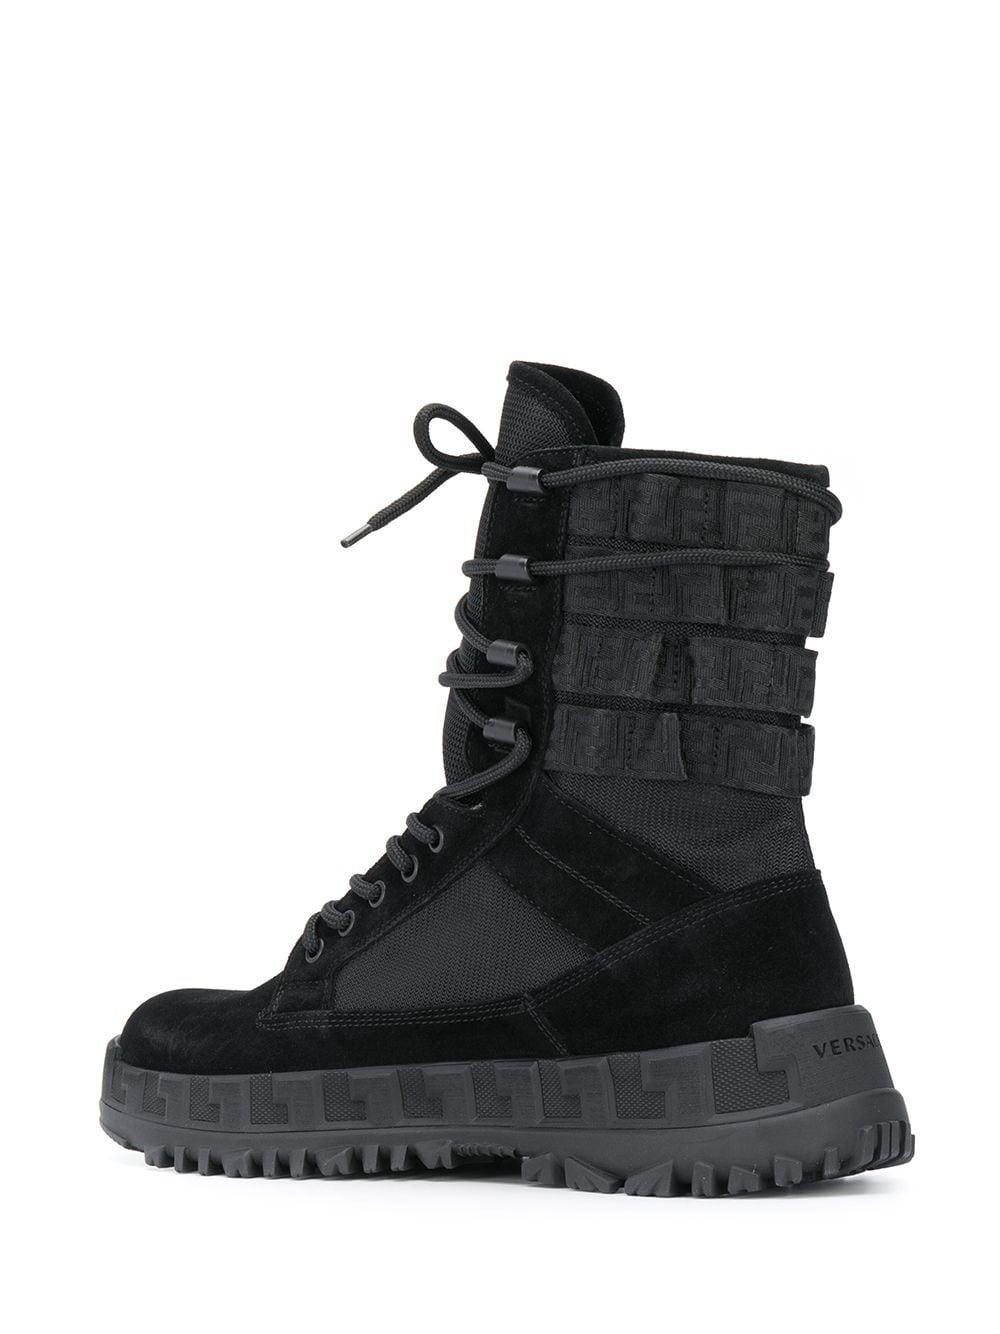 versace combat boots